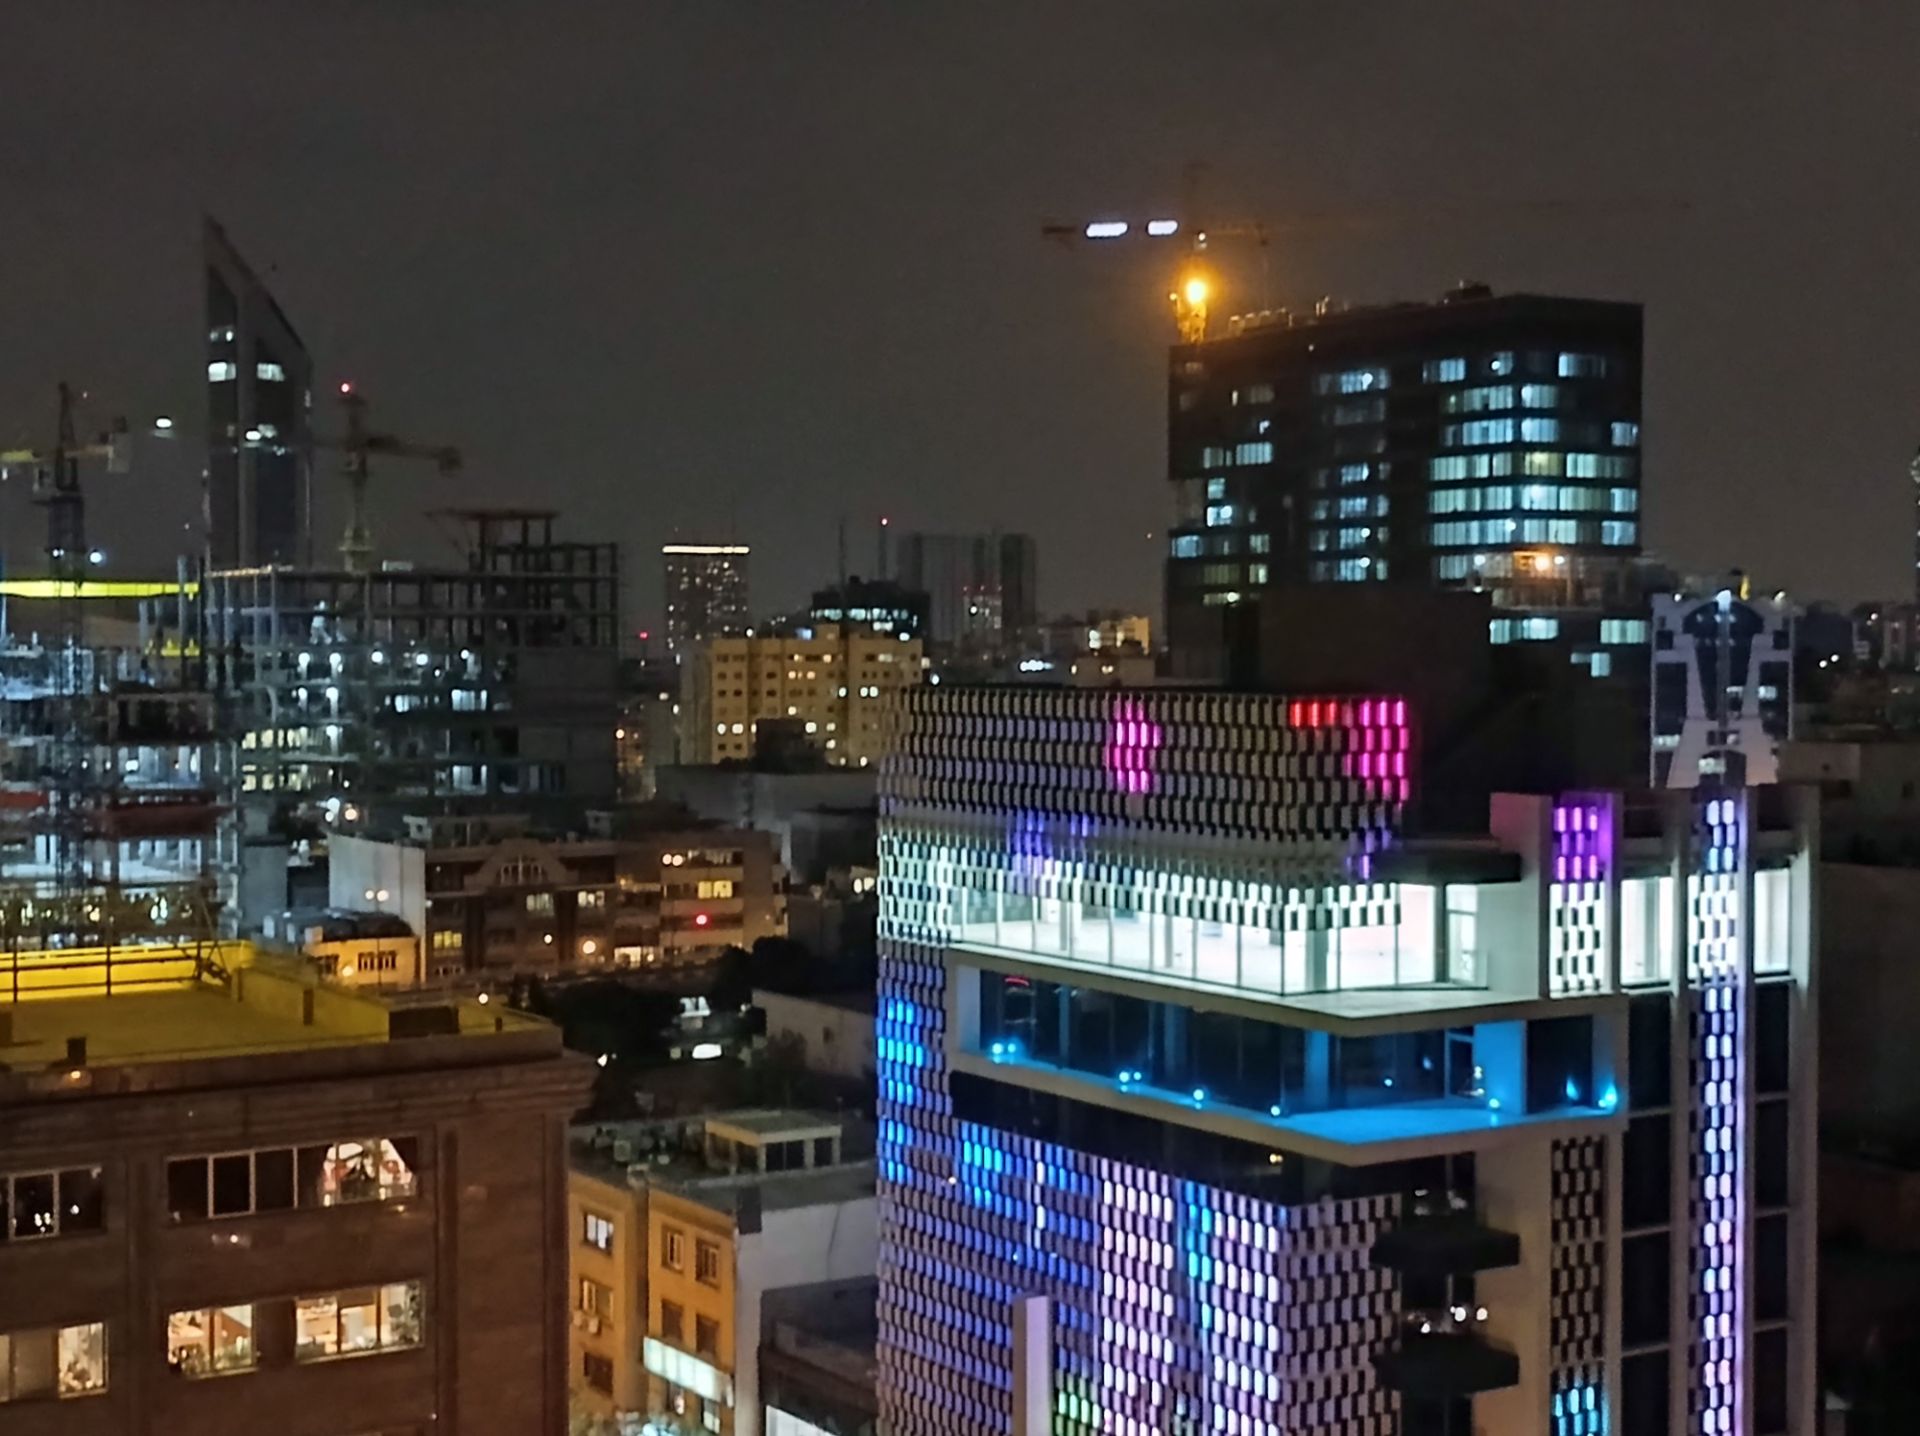 نمونه عکس 2x دوربین اصلی ردمی نوت ۹ در تاریکی - ساختمان های خیابان جردن